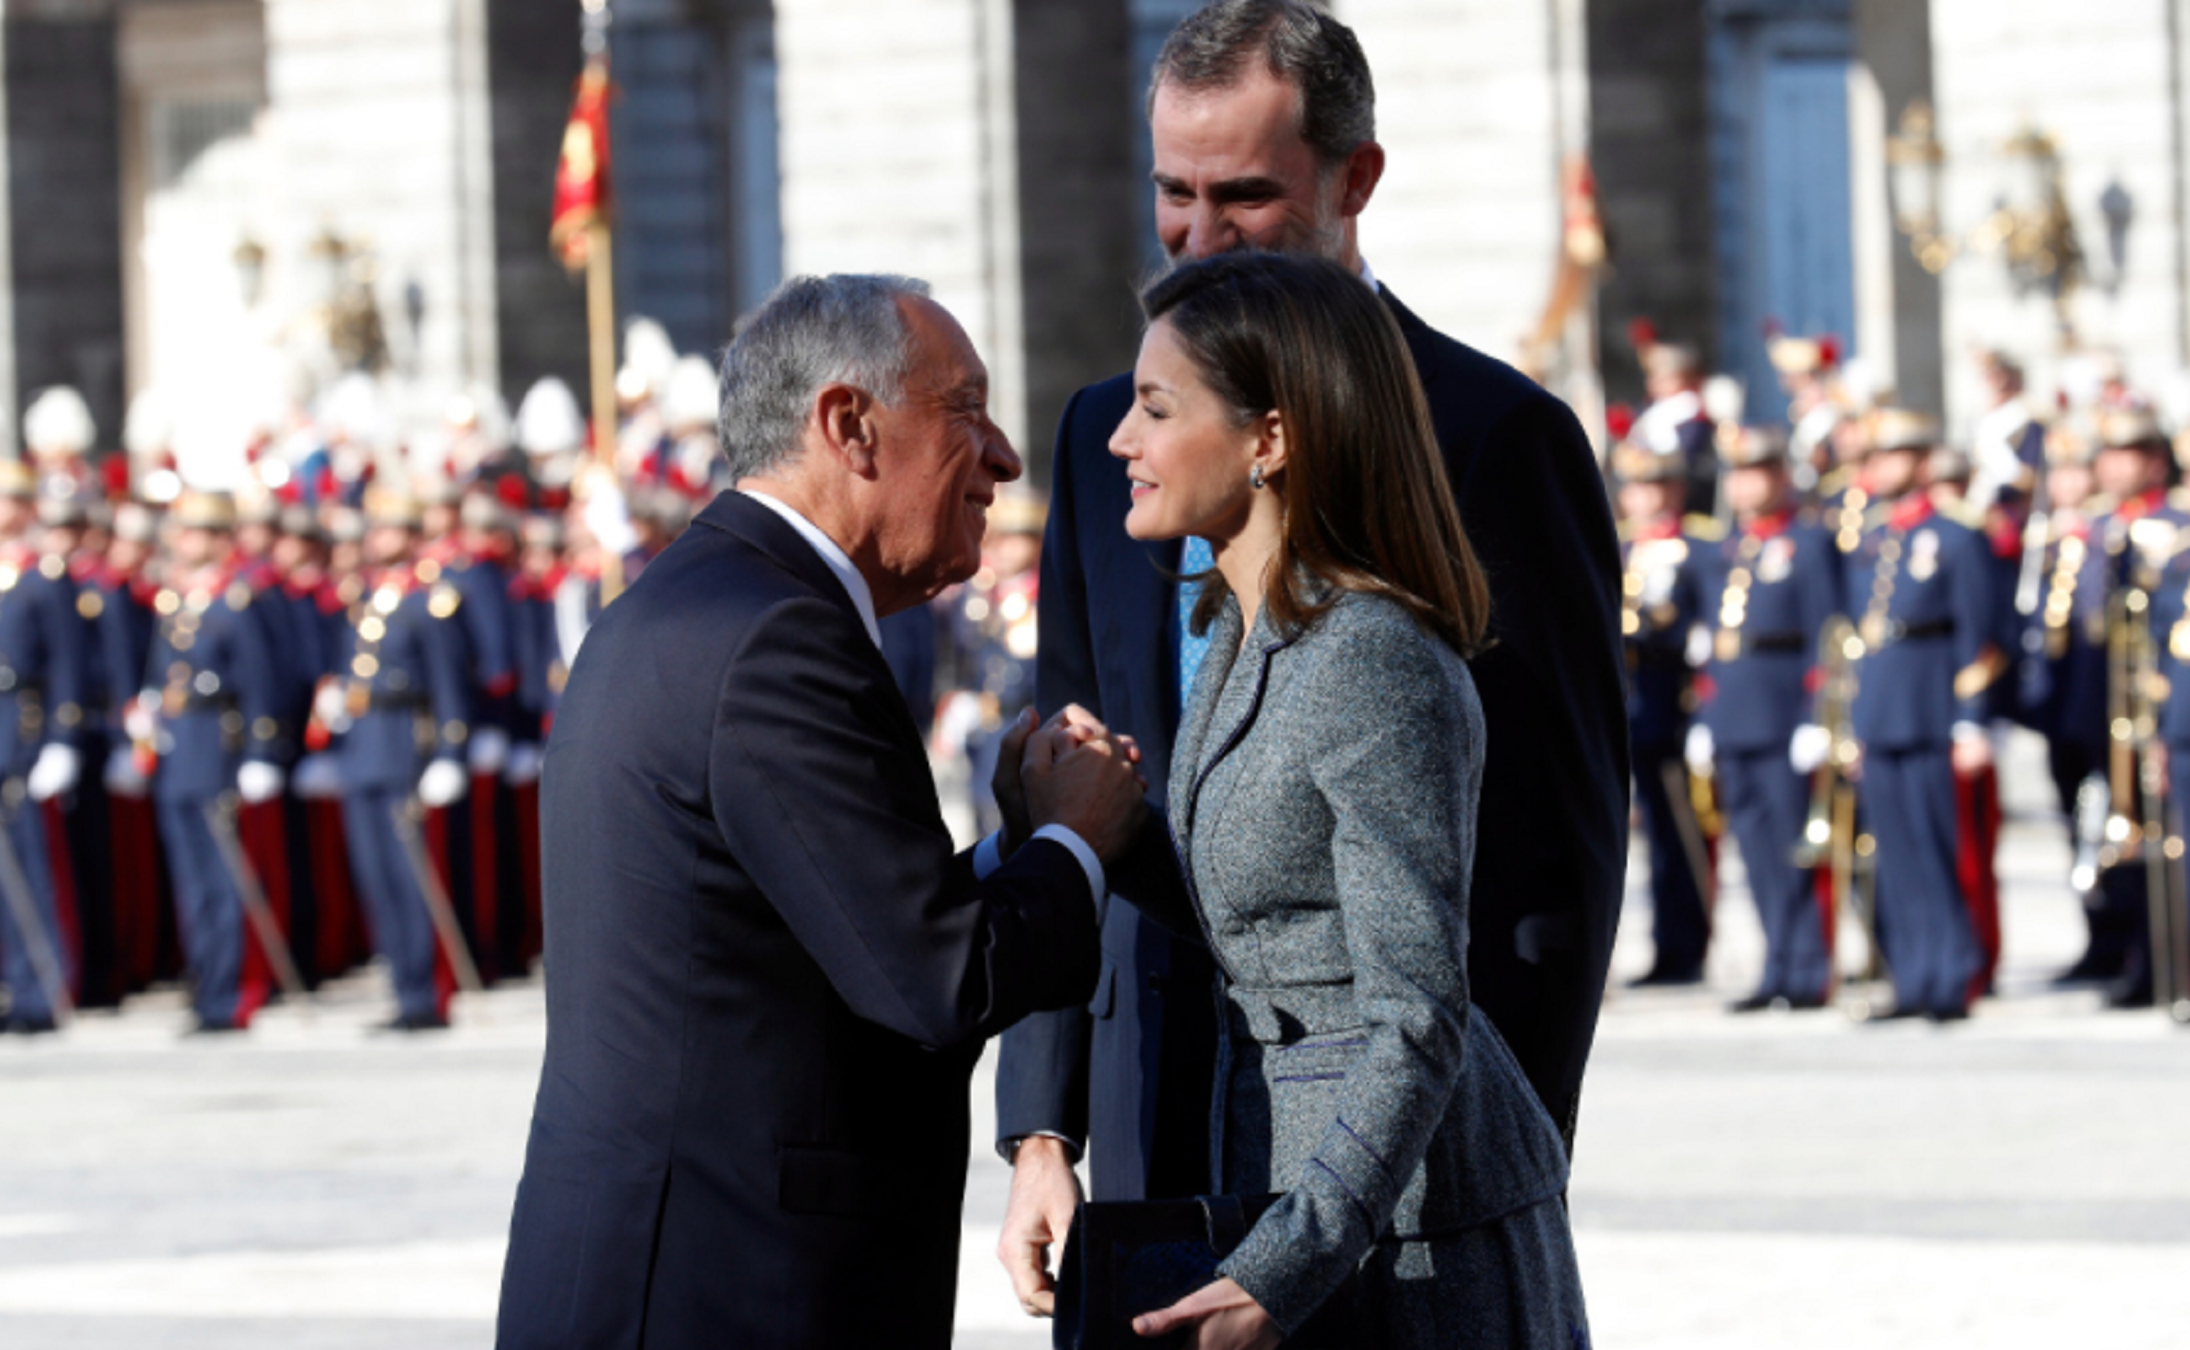 Letícia repeteix el vestit del 12-O per rebre el president de Portugal